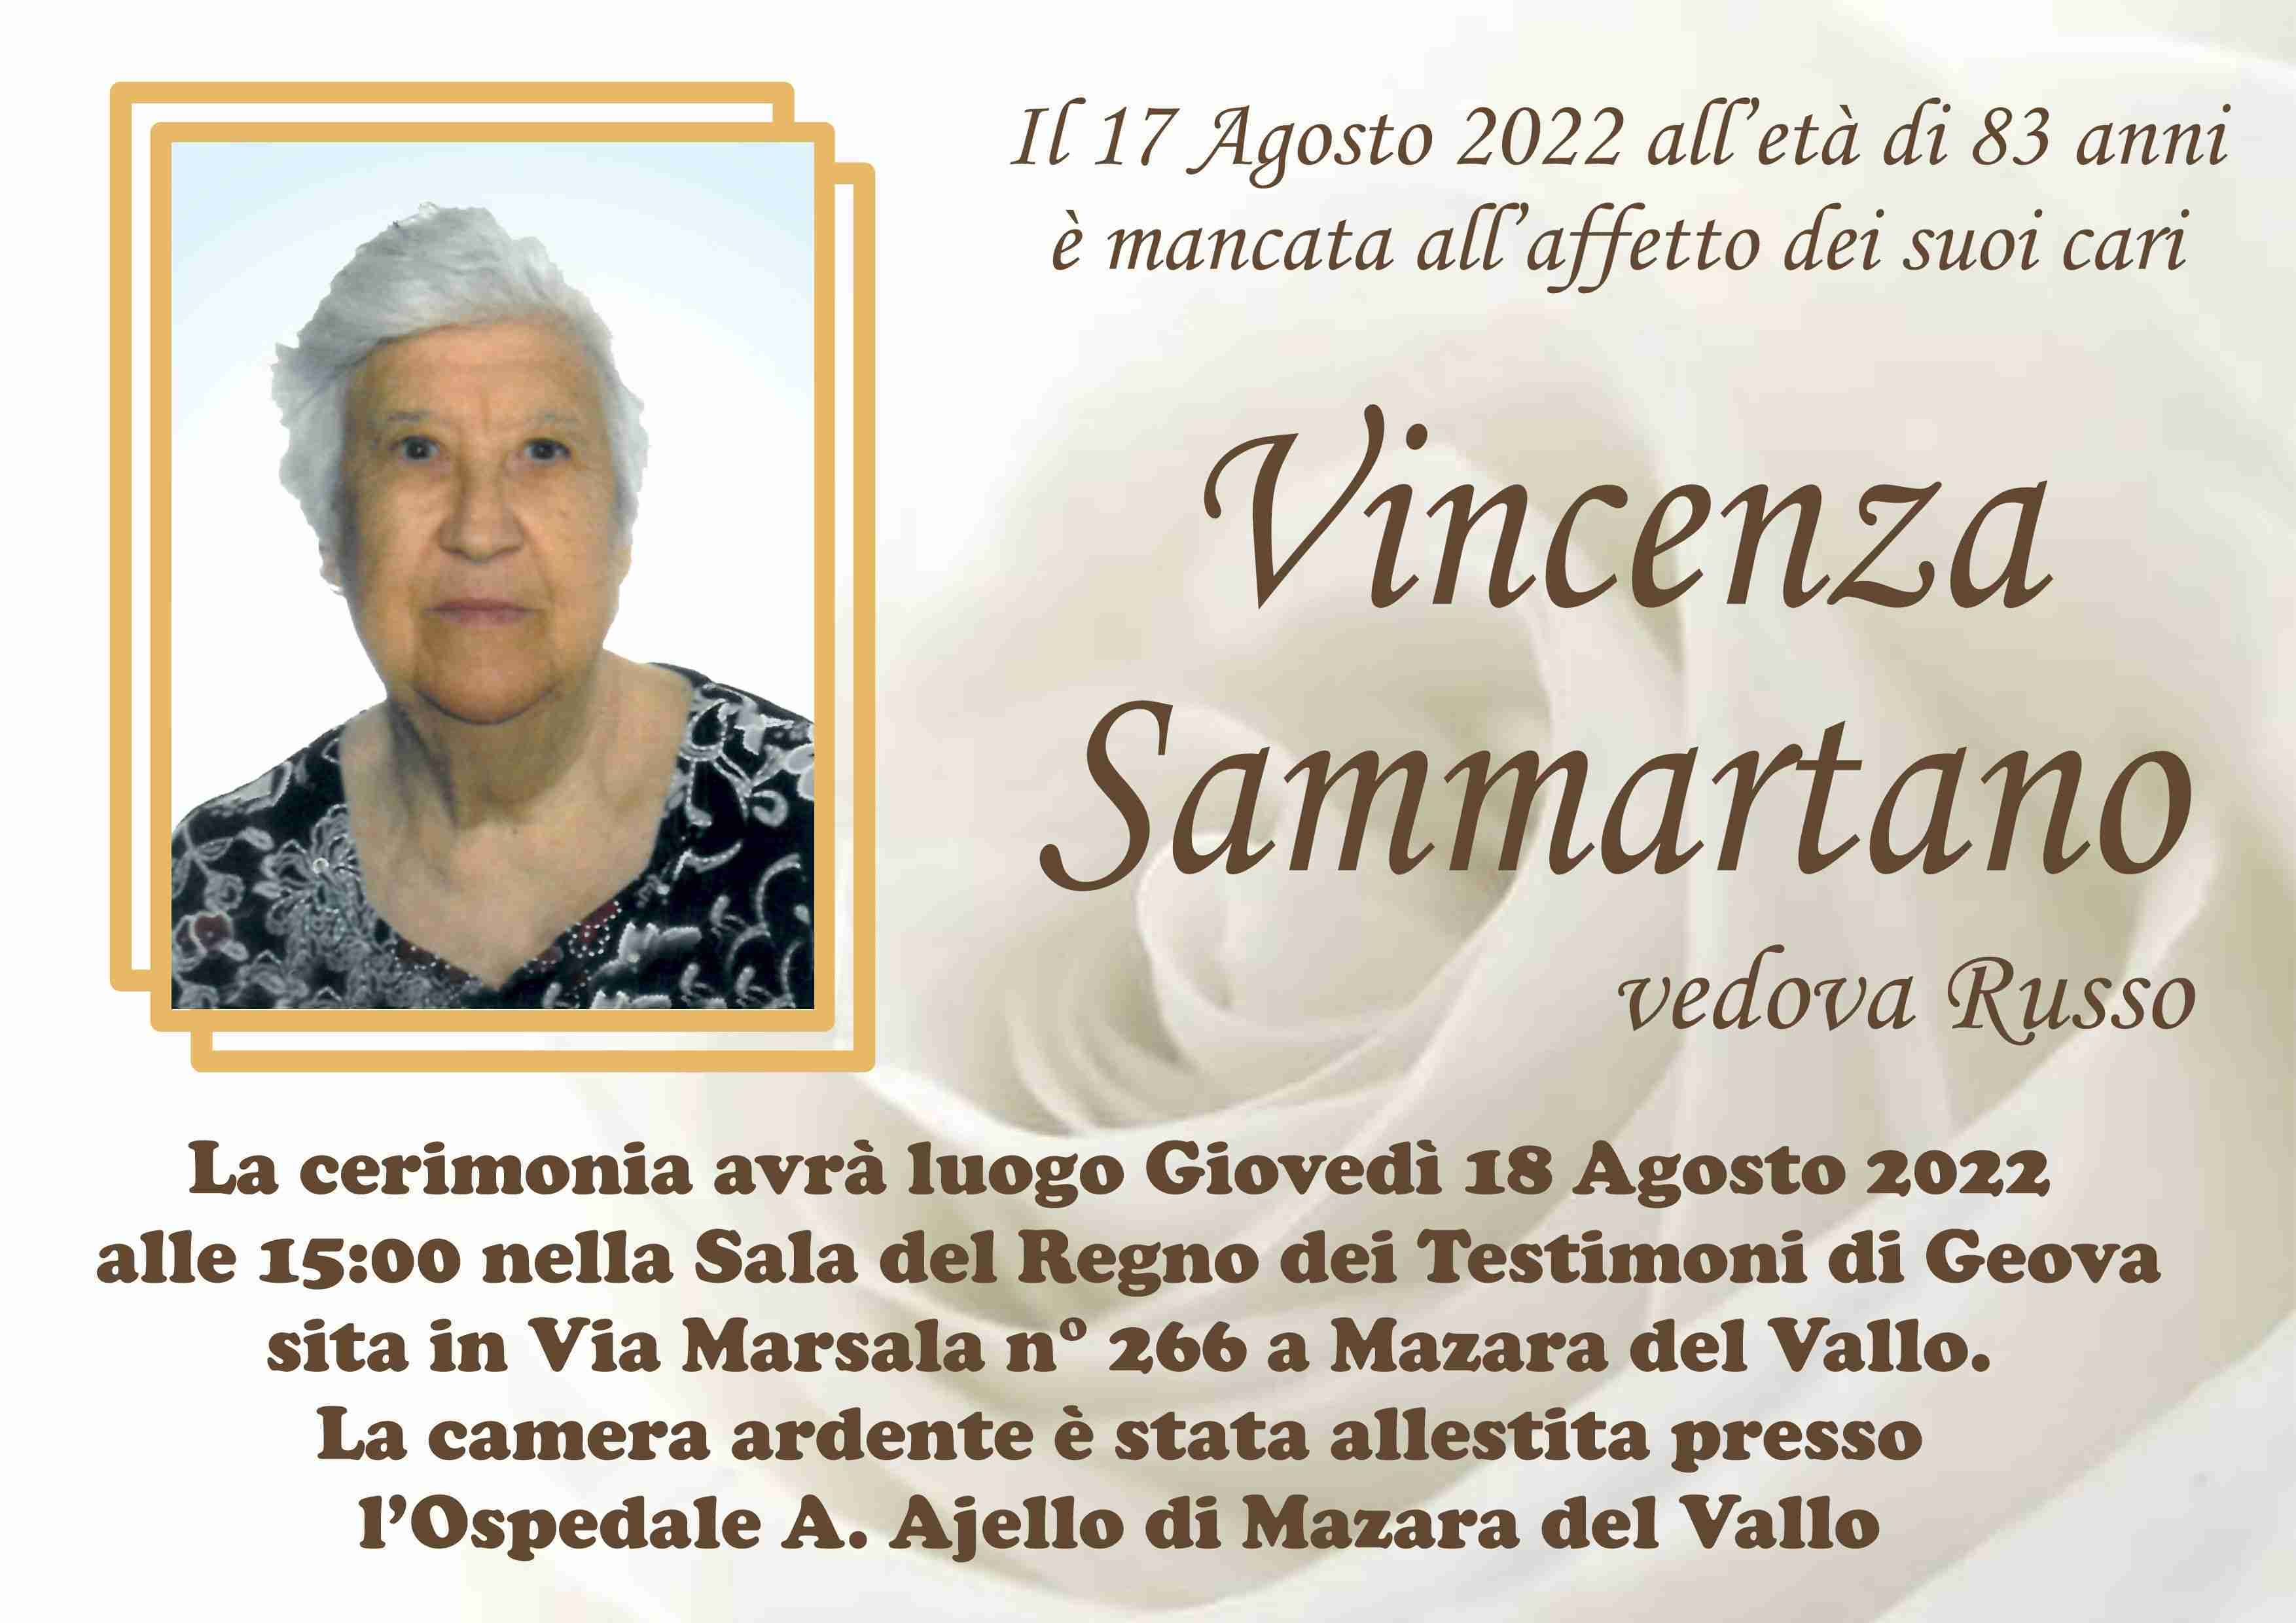 Vincenza Sammartano